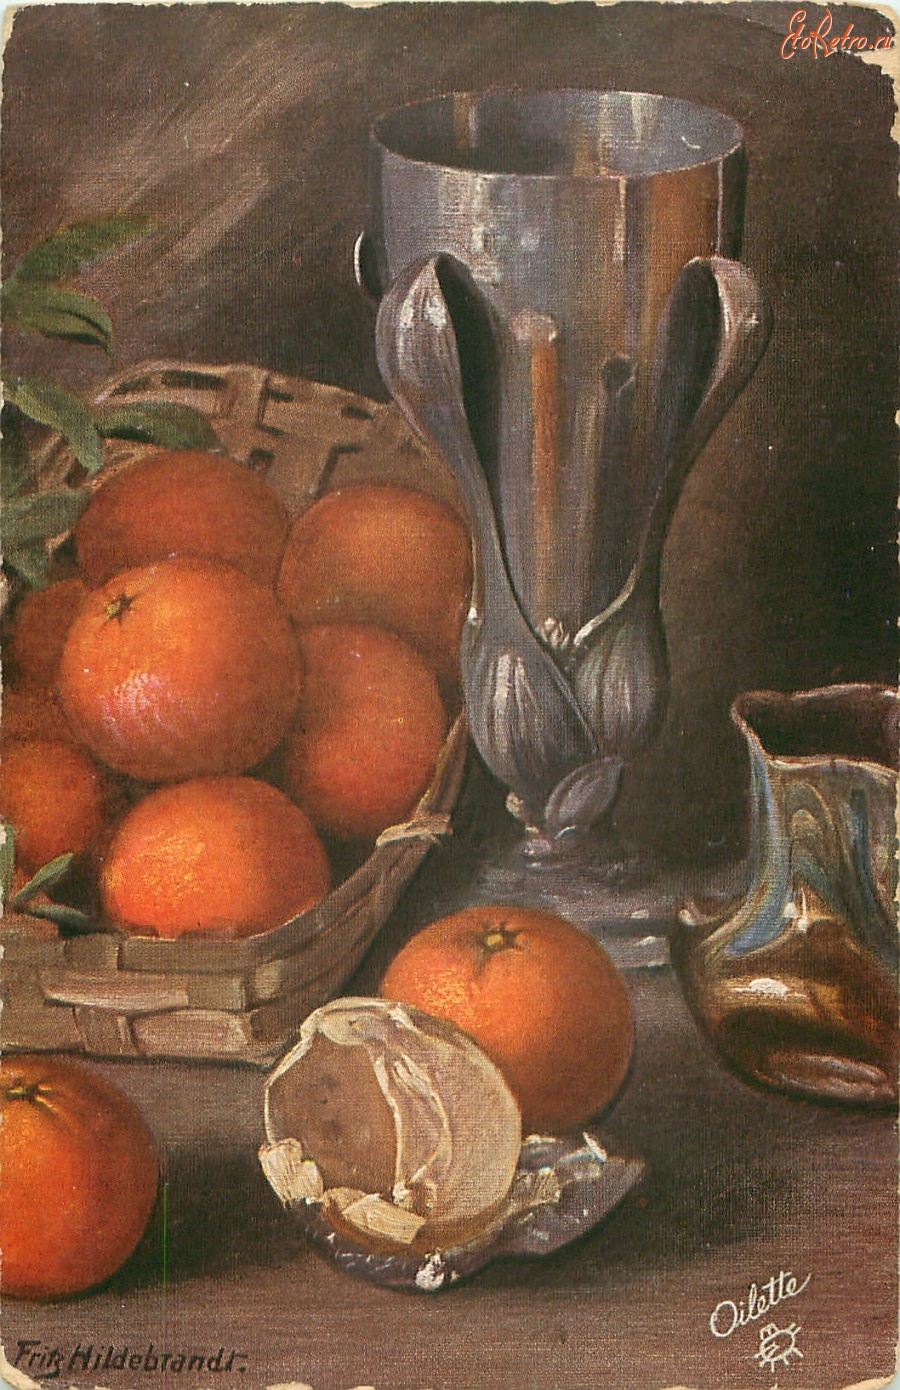 Ретро открытки - Фриц Хильдебранд. Апельсины в корзине и оловянные вазы